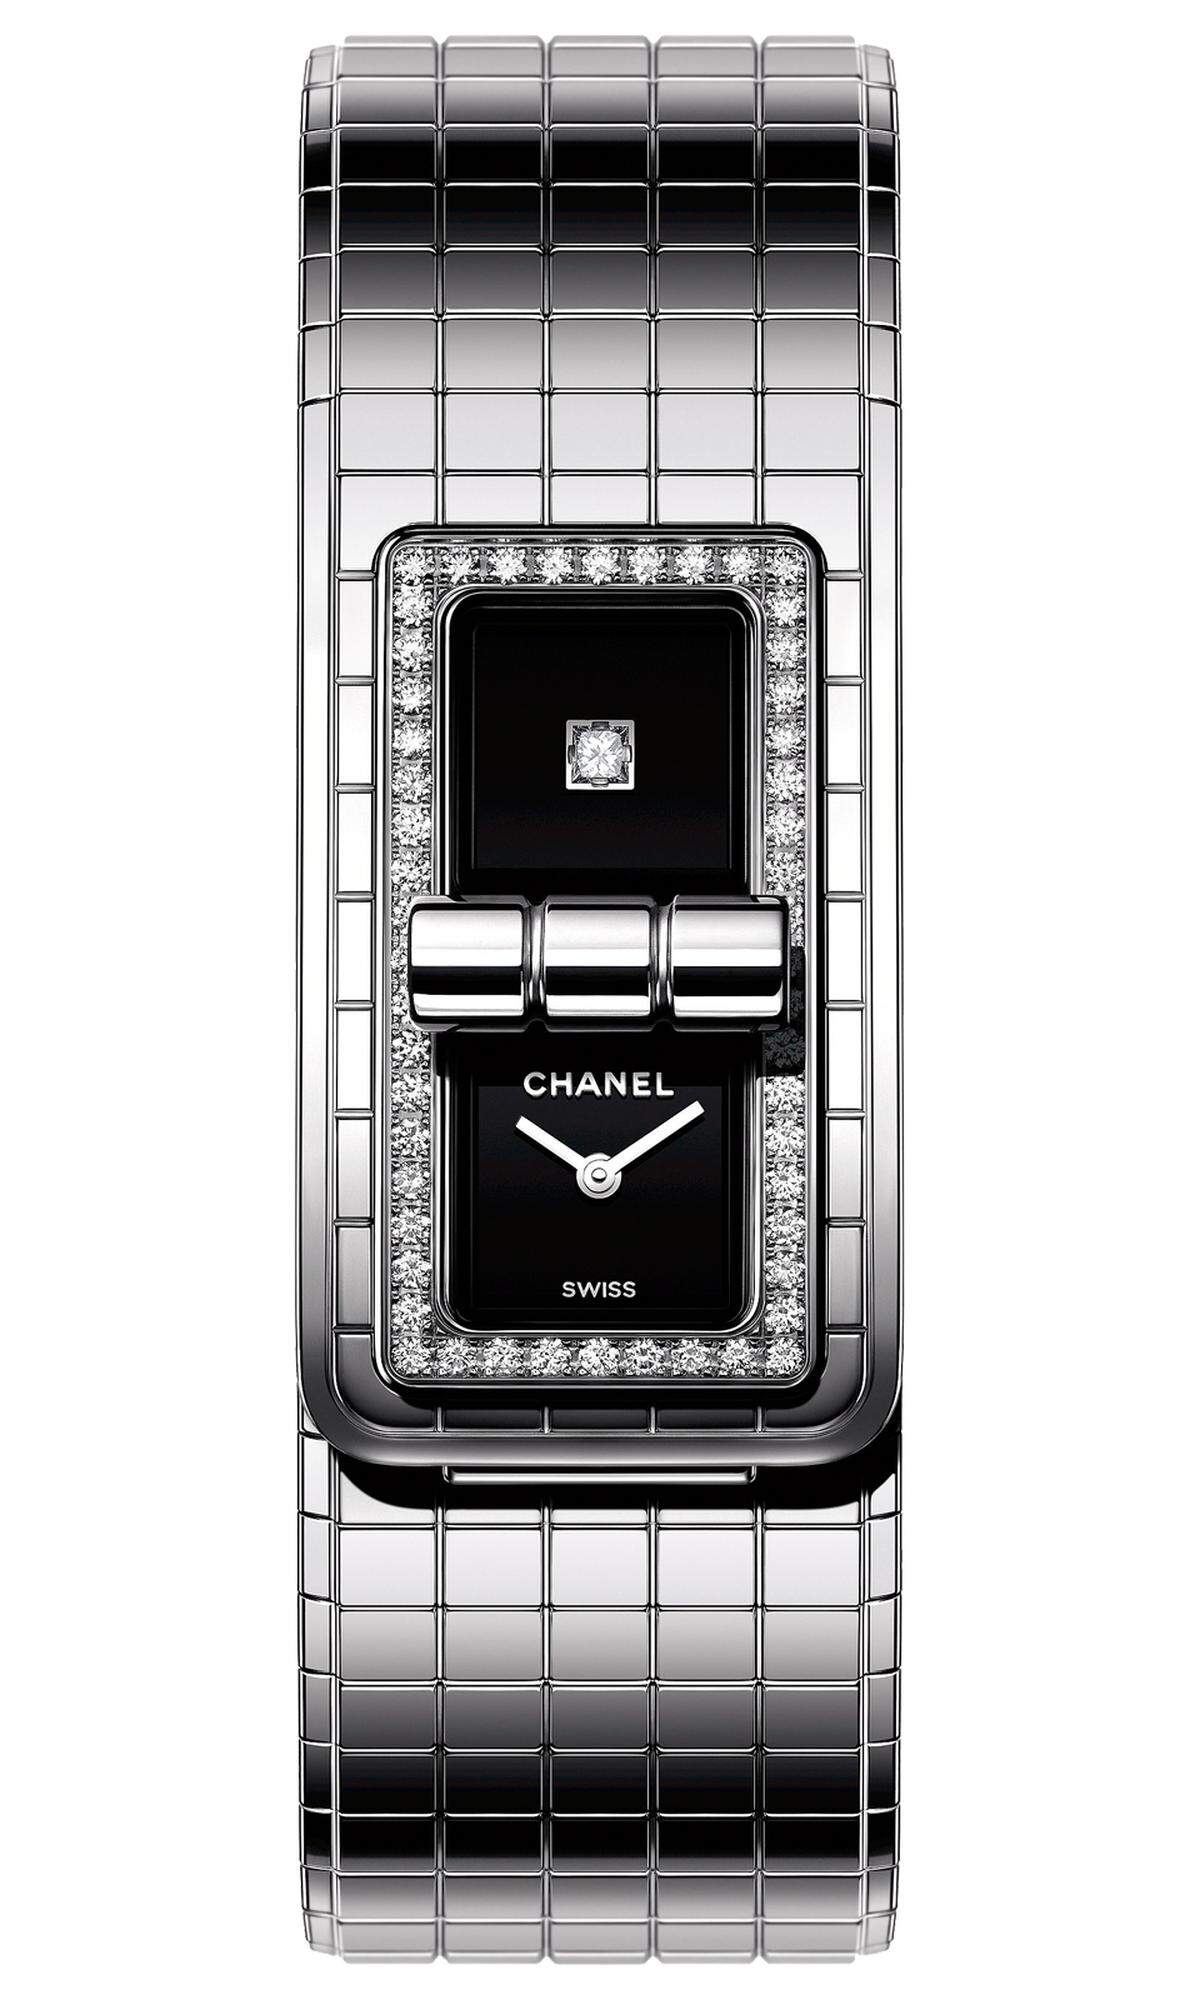 Die legendäre gesteppte Chanel-Tasche „2.55“ stand für diese Uhr Pate: „Code Coco“ wird mit einem Klick geschlossen, genau wie die von Coco Chanel im Februar 1955 kreierte Handtasche. Die Schließe ziert dabei die Mitte des Zifferblatts.